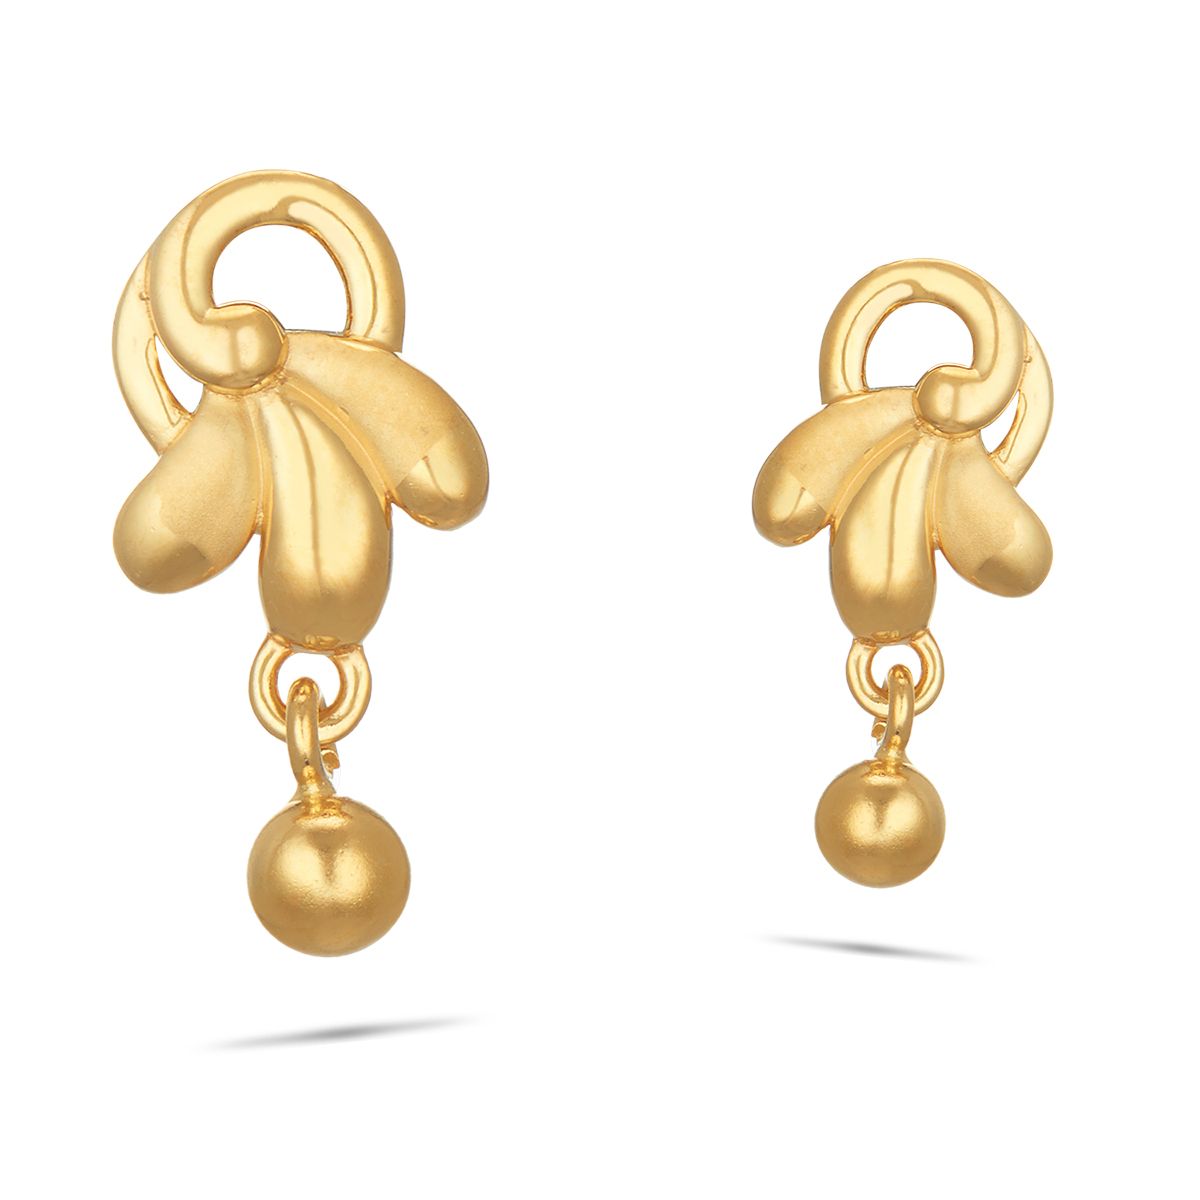 Latest Gold Stud Earring Design for Baby Girls 2021 || Light Weight Gold  Earring Design Collection - YouTube